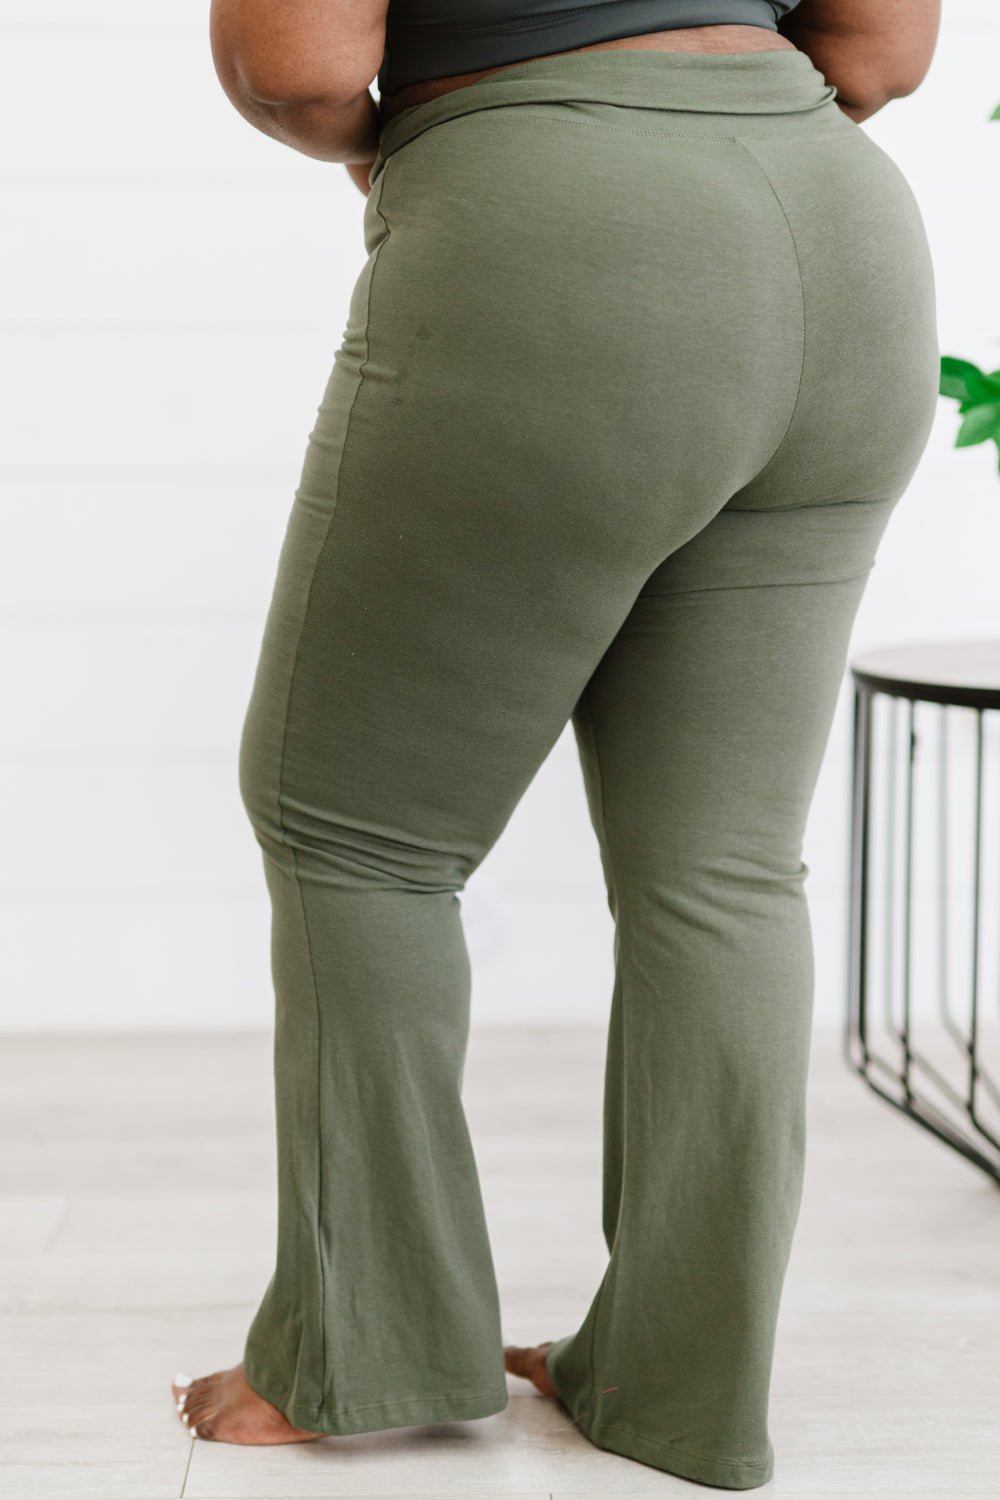 Zenana Long Leggings Yoga Pants Cotton Stretch S-XL Plus 1X-3X